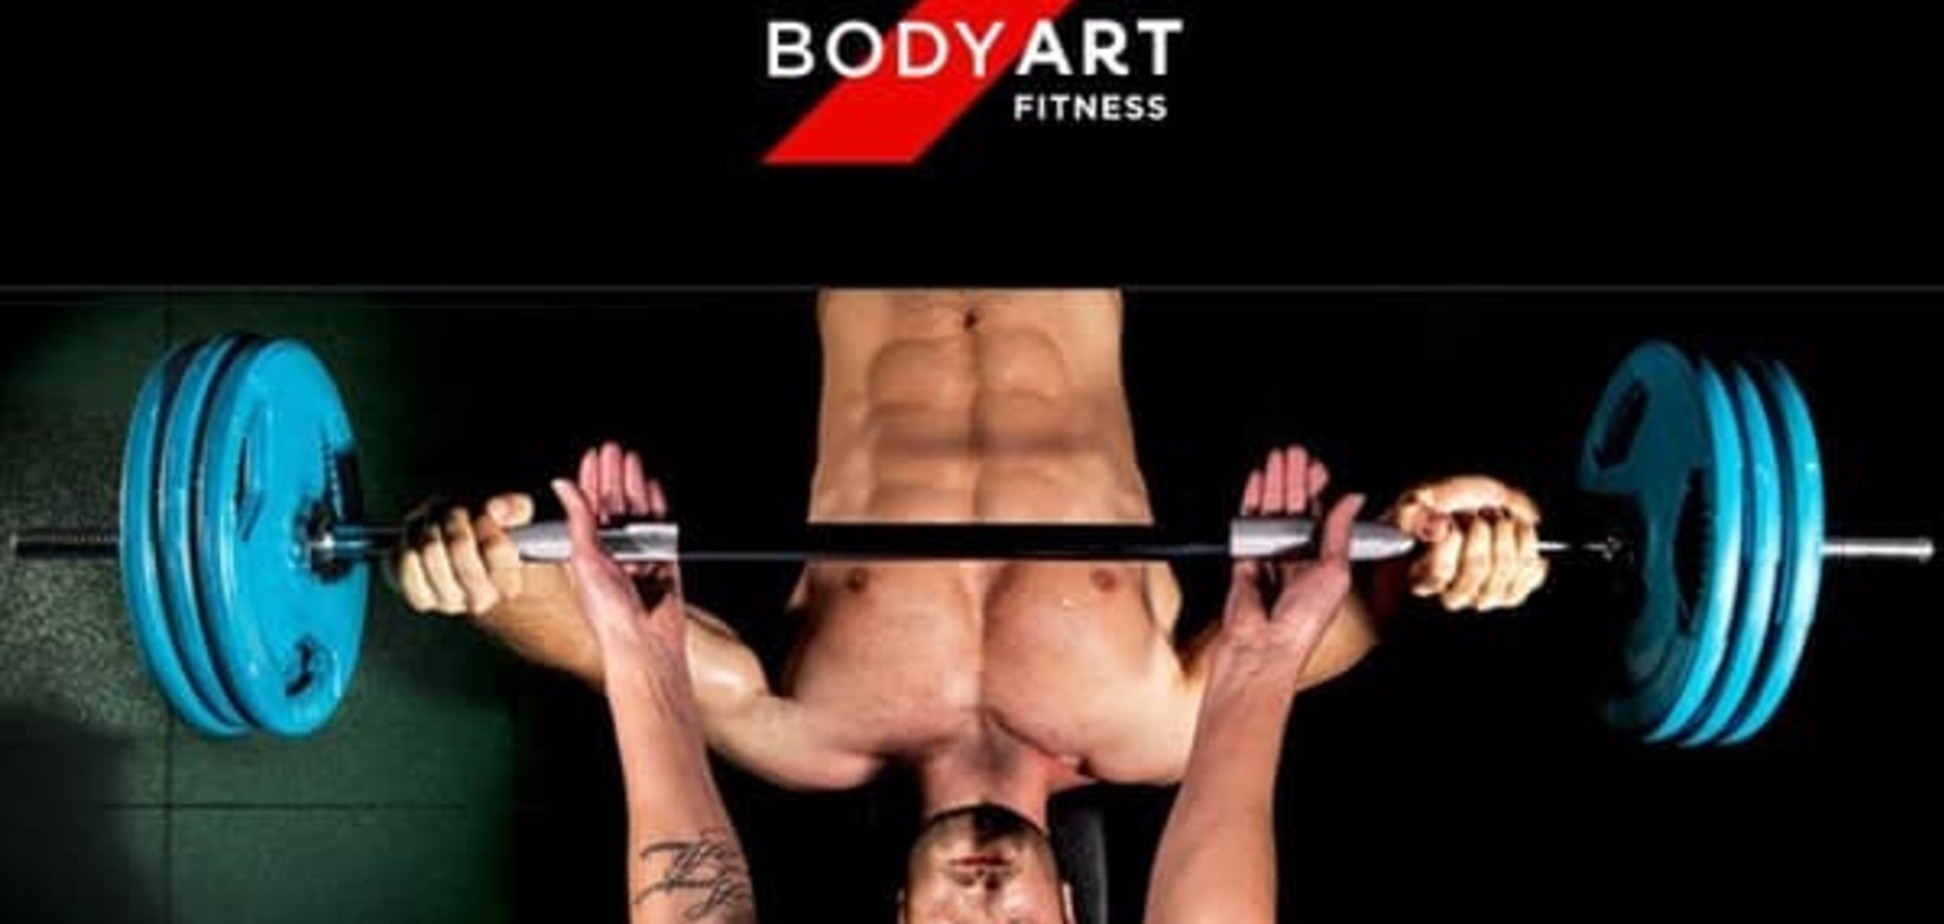 Участвуй в конкурсе и выигрывай абенемент в фитнес-клуб BodyArt fitness